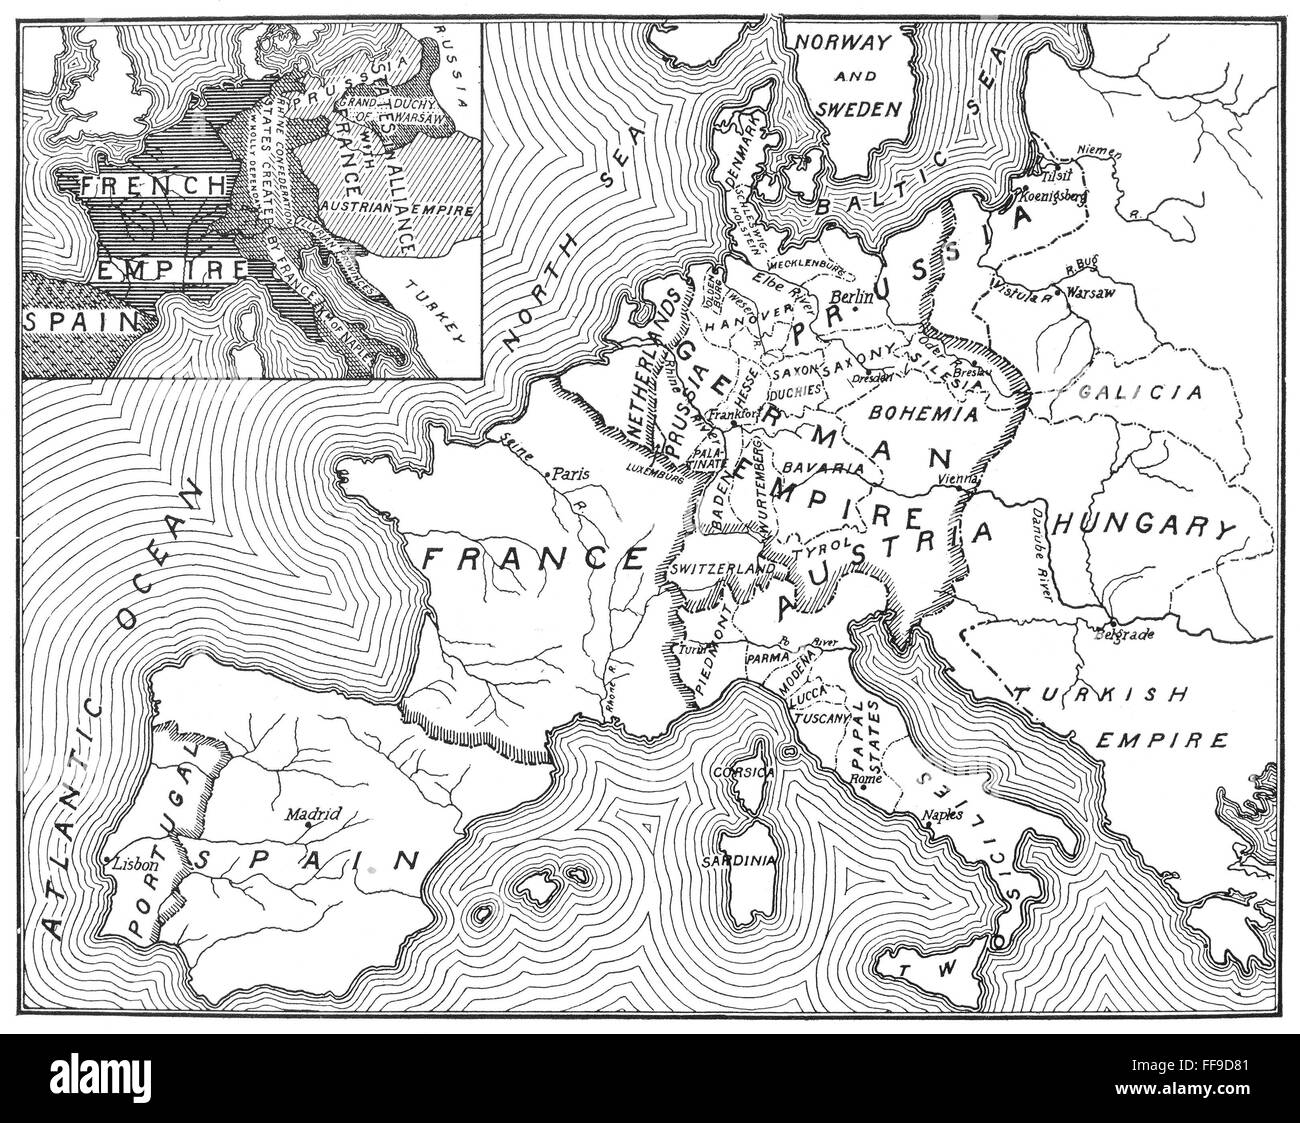 Landkarte europa Schwarzweiß-Stockfotos und -bilder - Alamy